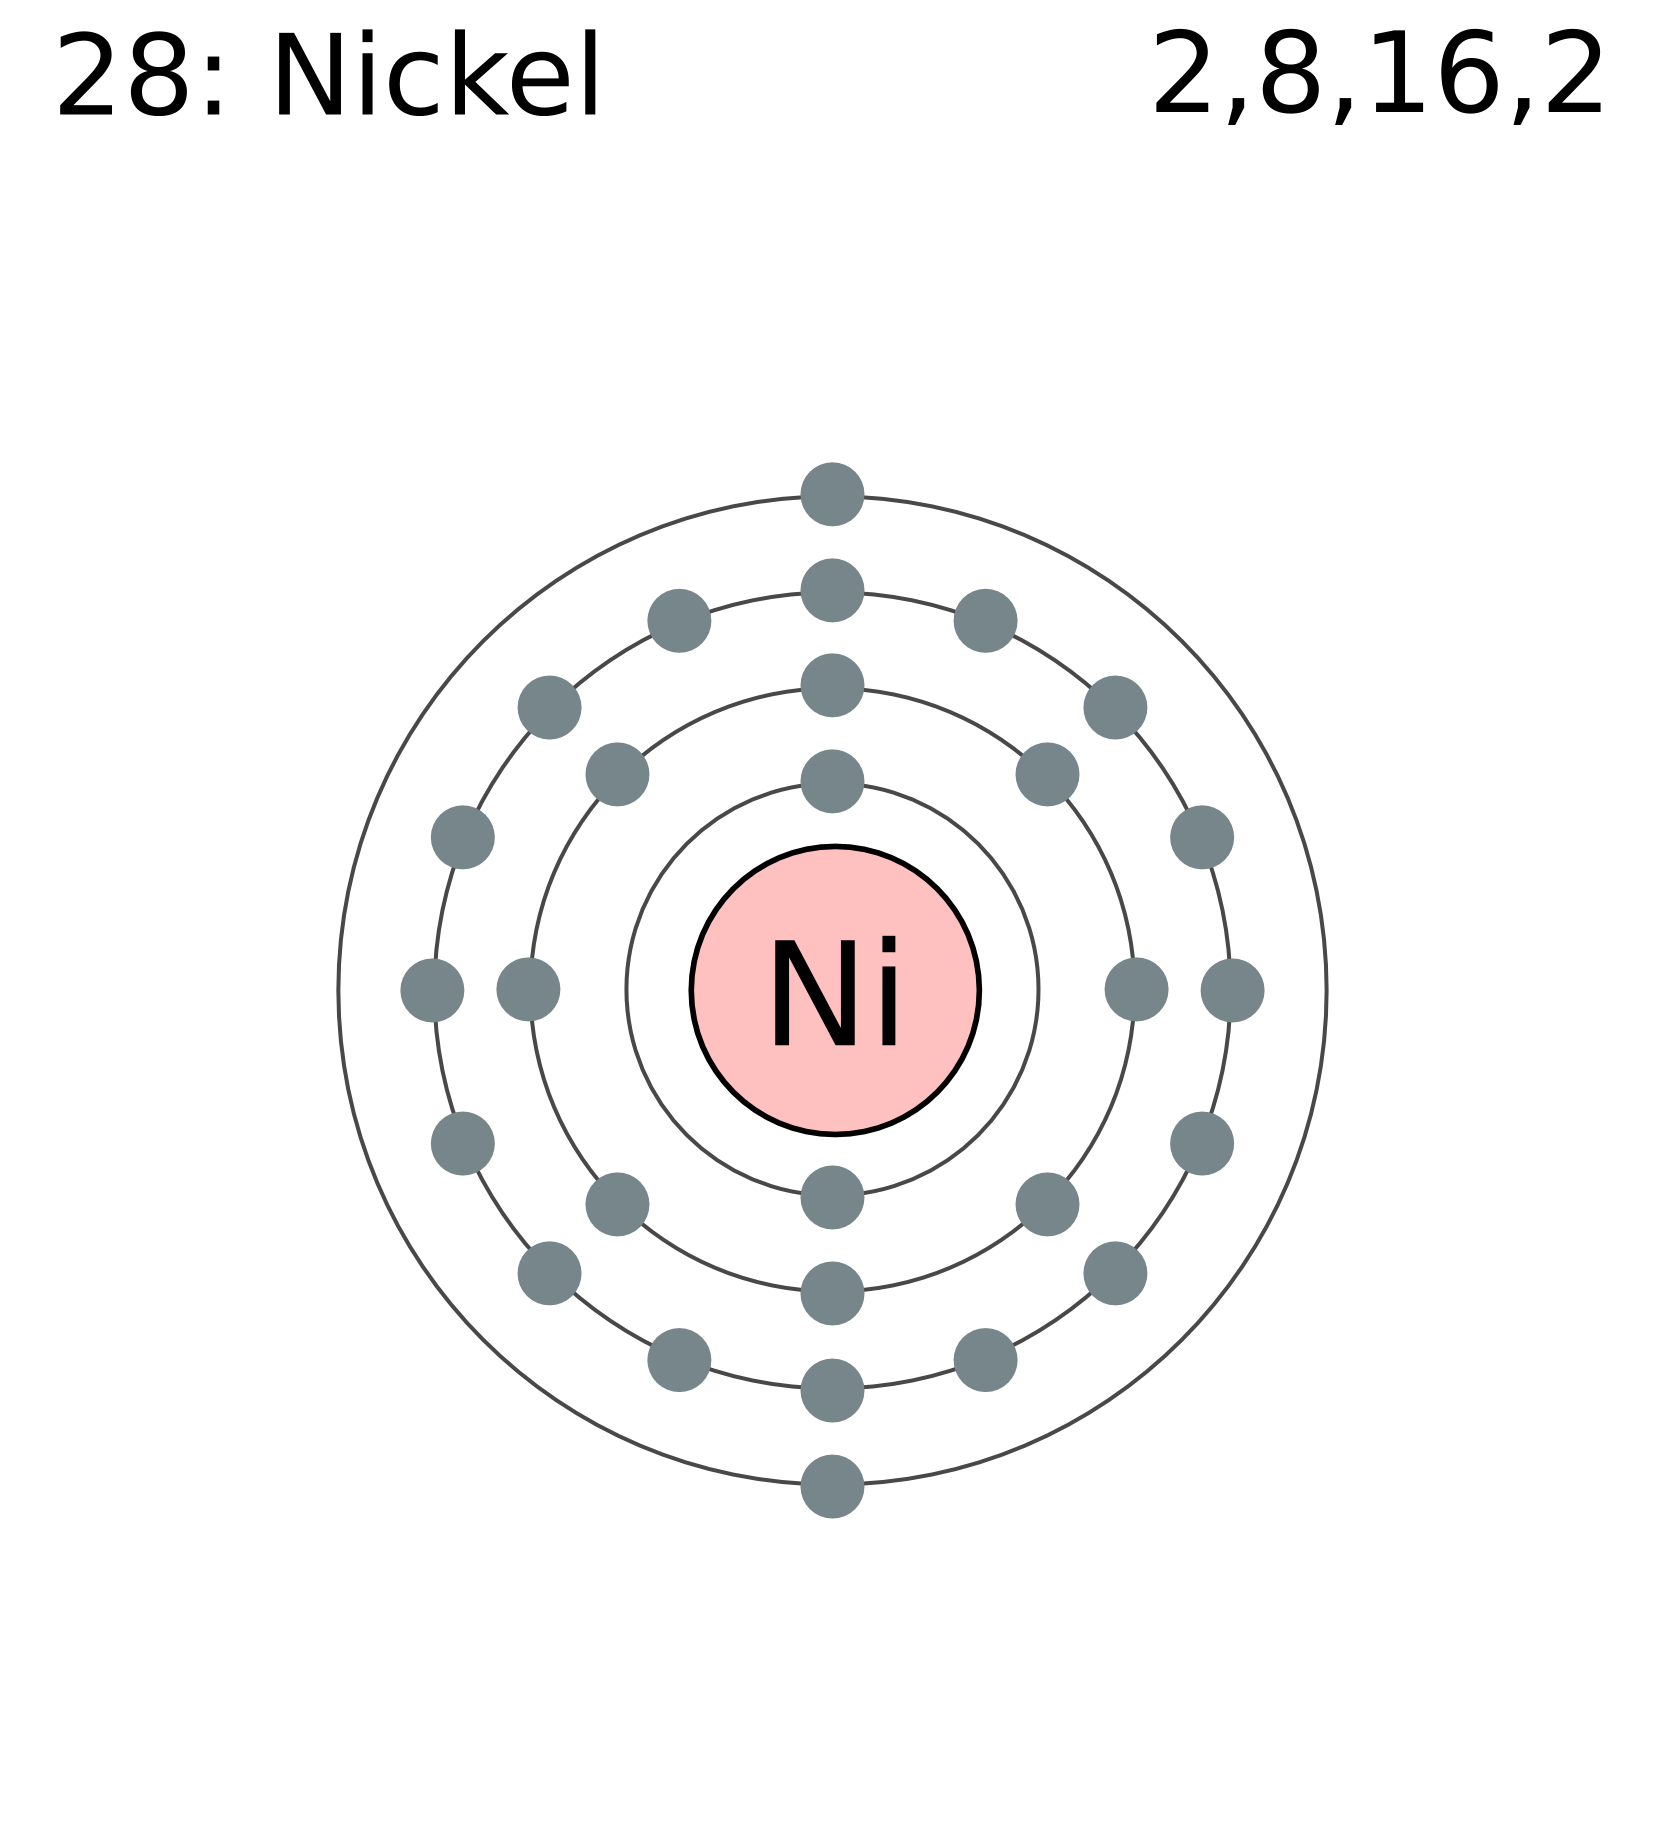 copper bohr diagram